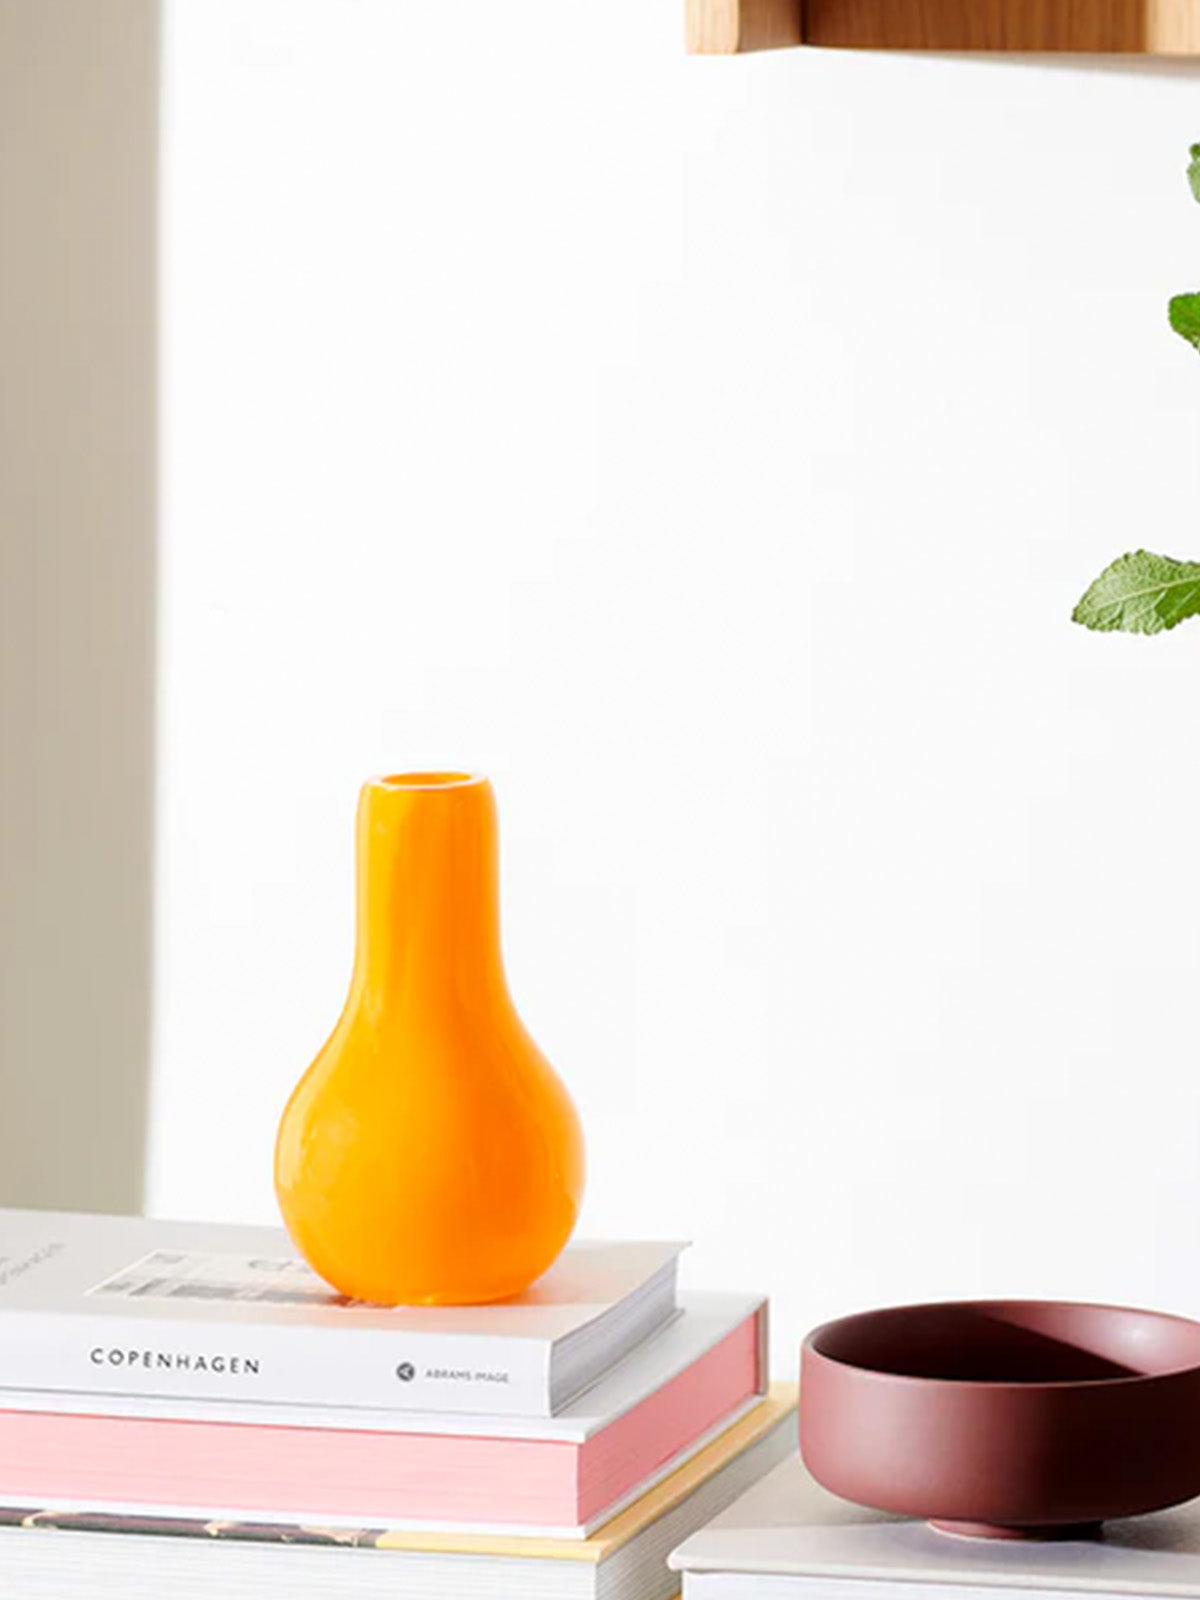 Vase i orange glas H15xD8cm